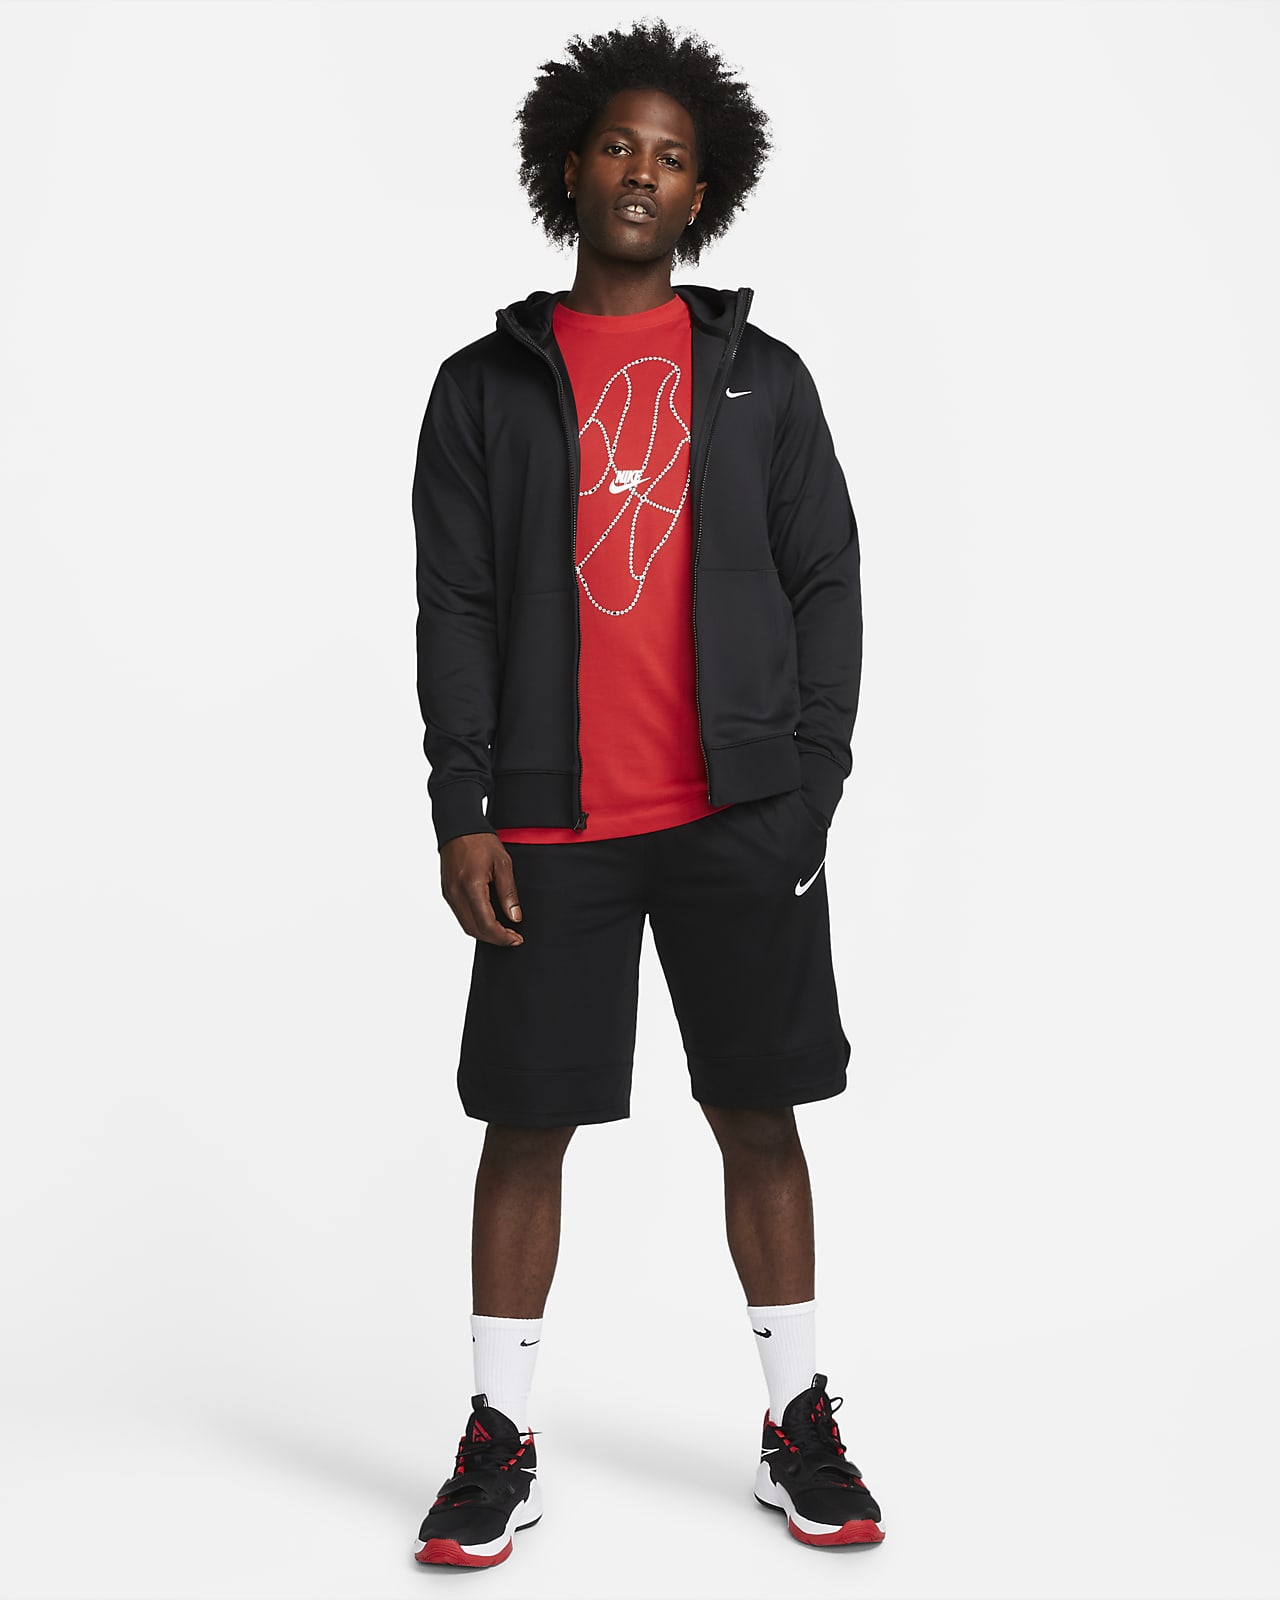 Natura torpe Capataz Nike Dri-FIT Showtime Sudadera con capucha de baloncesto con cremallera  completa - Hombre. Nike ES